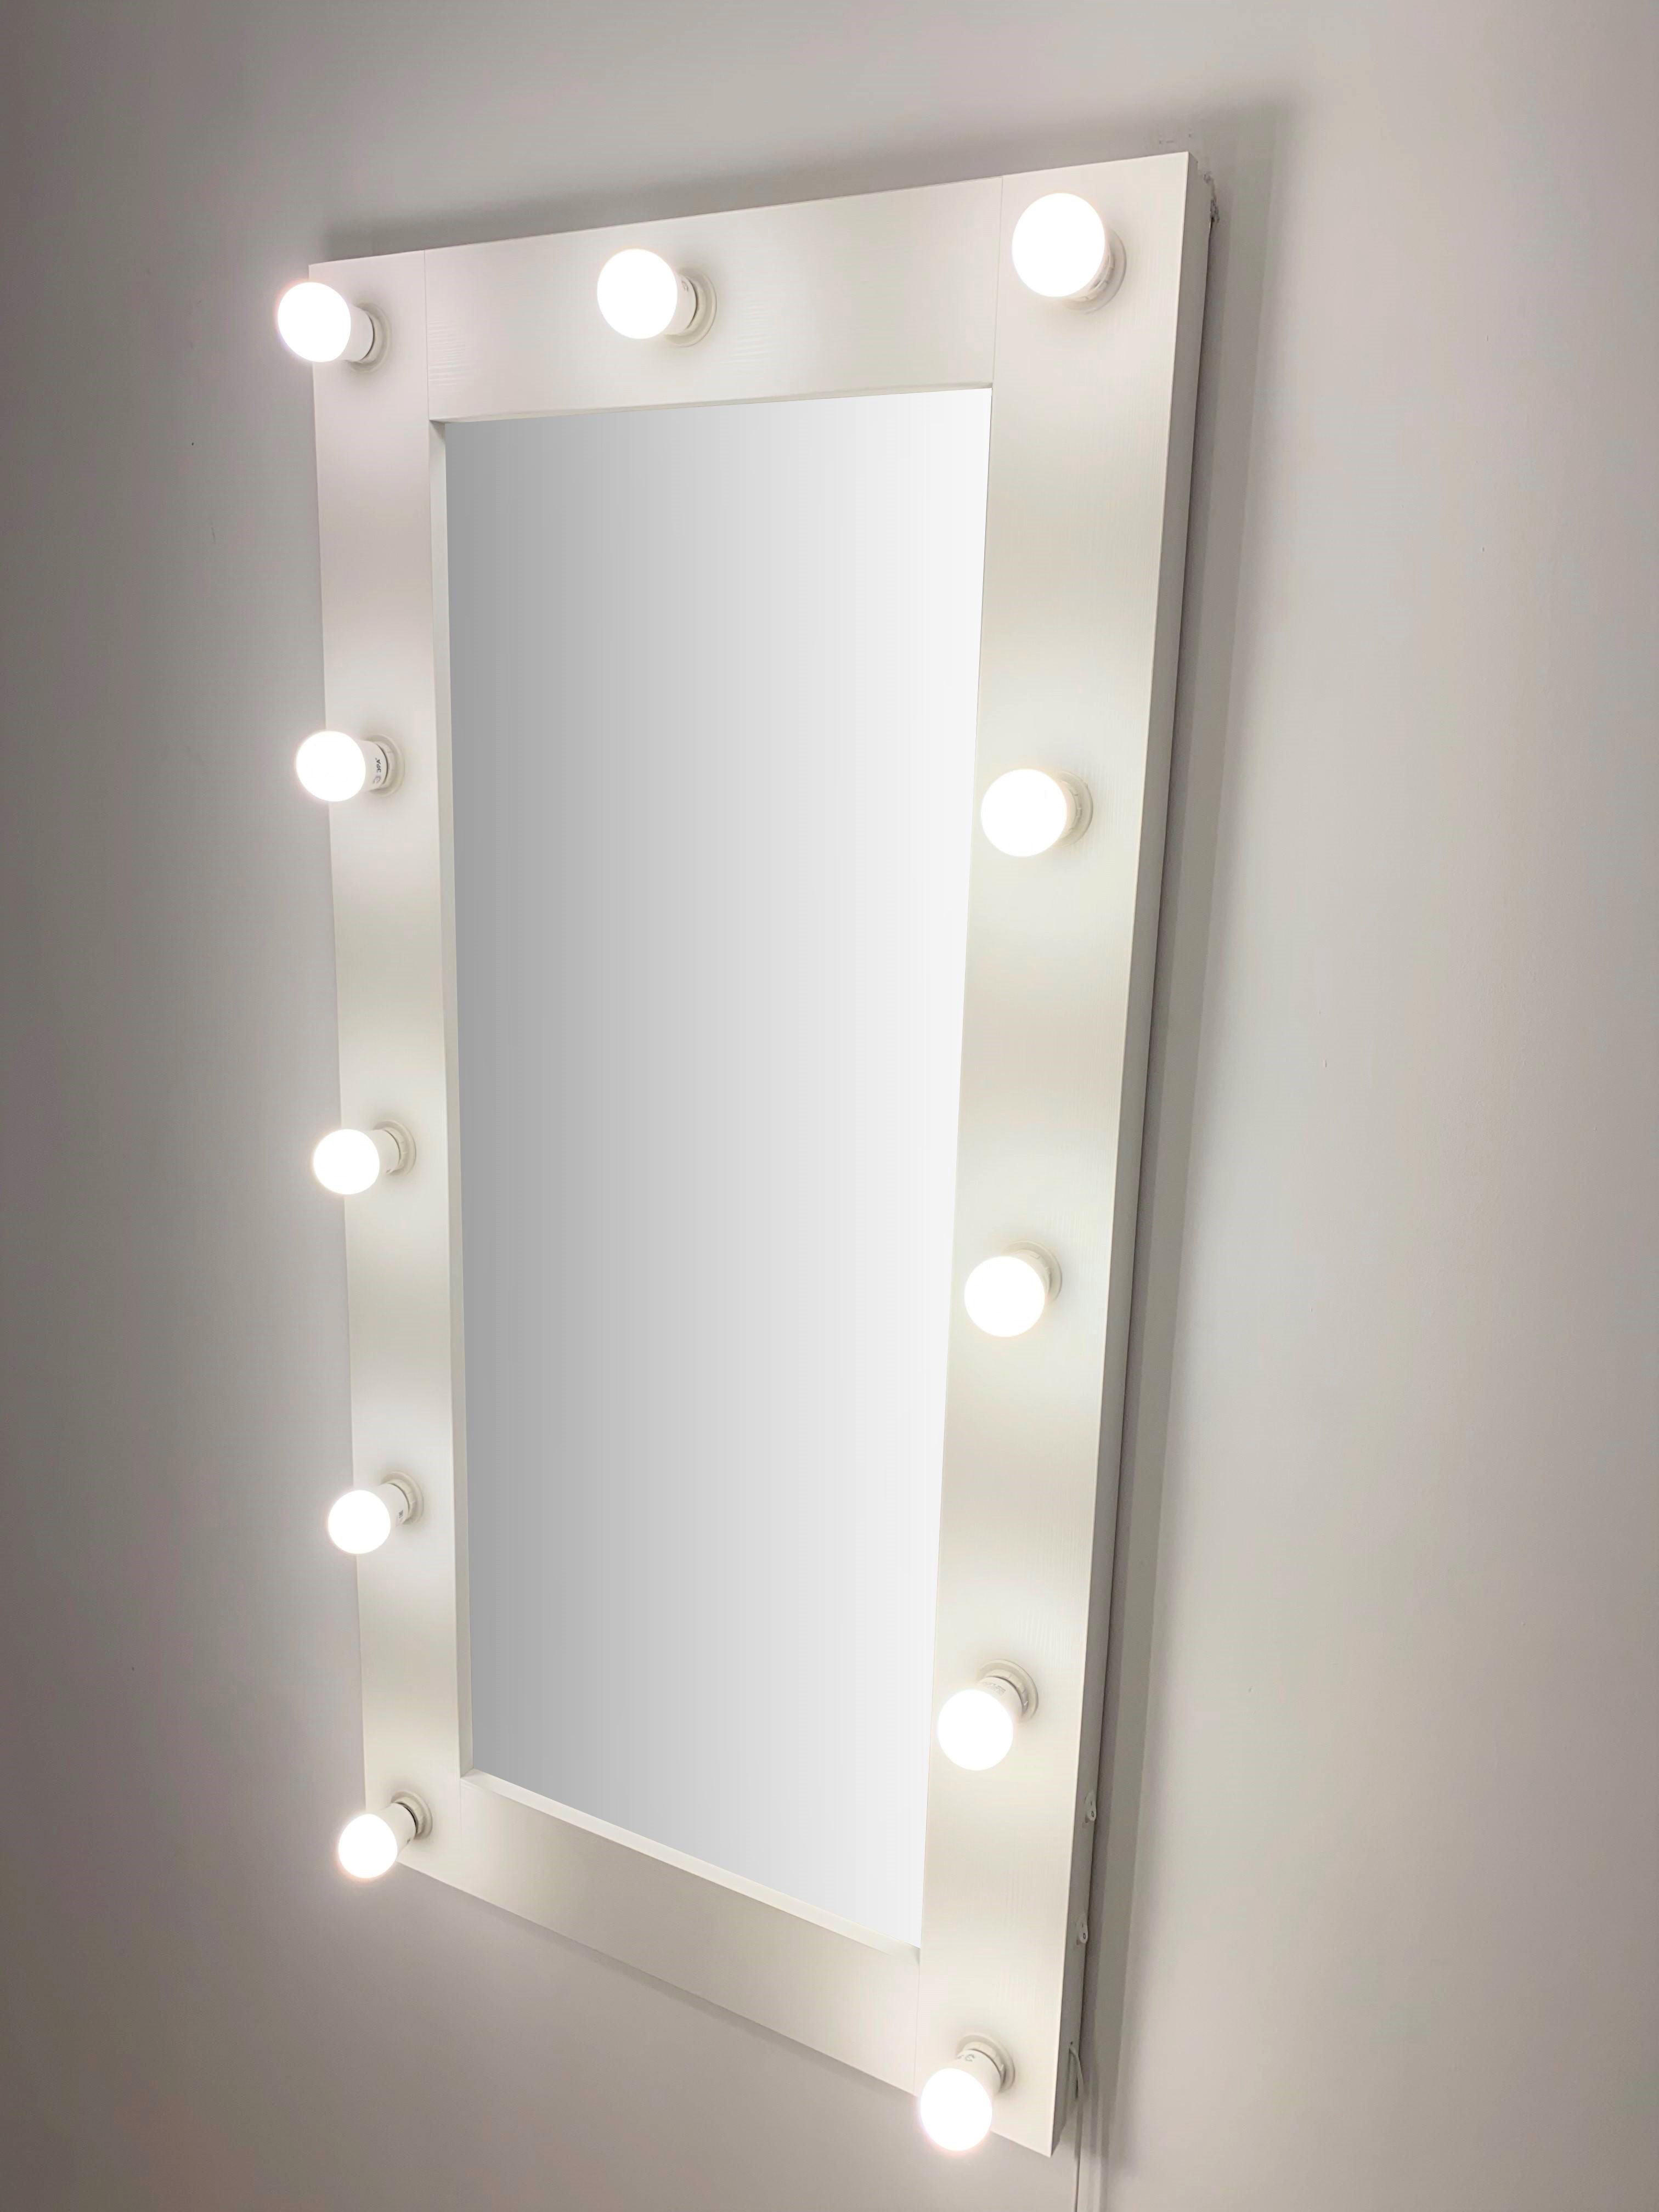 91053080 Гримерное зеркало с лампочками 120x60 см цвет белый STLM-0458990 BEAUTYUP